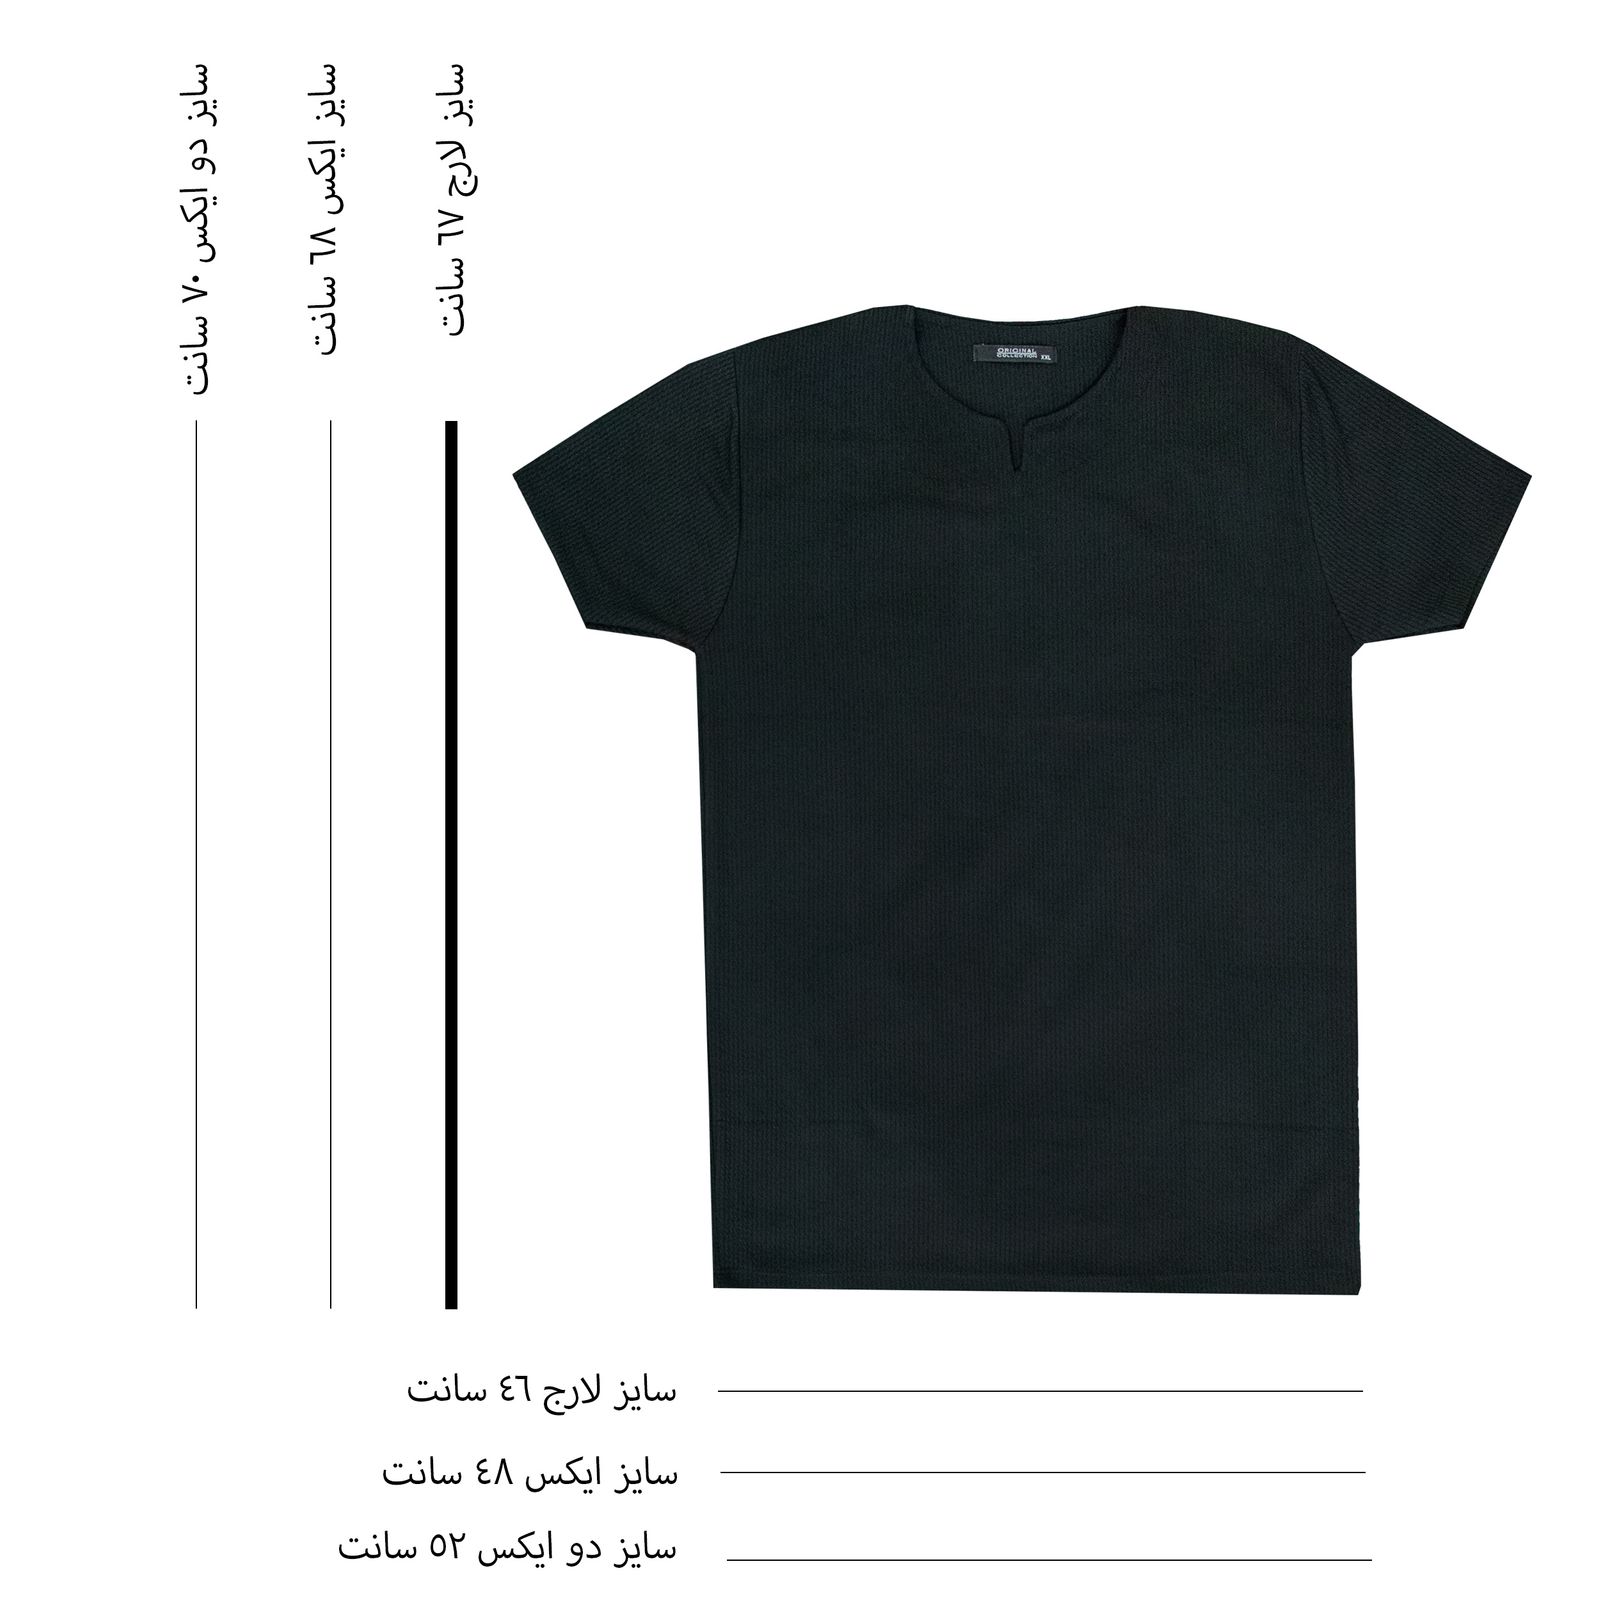 تی شرت آستین کوتاه مردانه کاملیا مدل کوبایی کد 51677 رنگ مشکی -  - 7